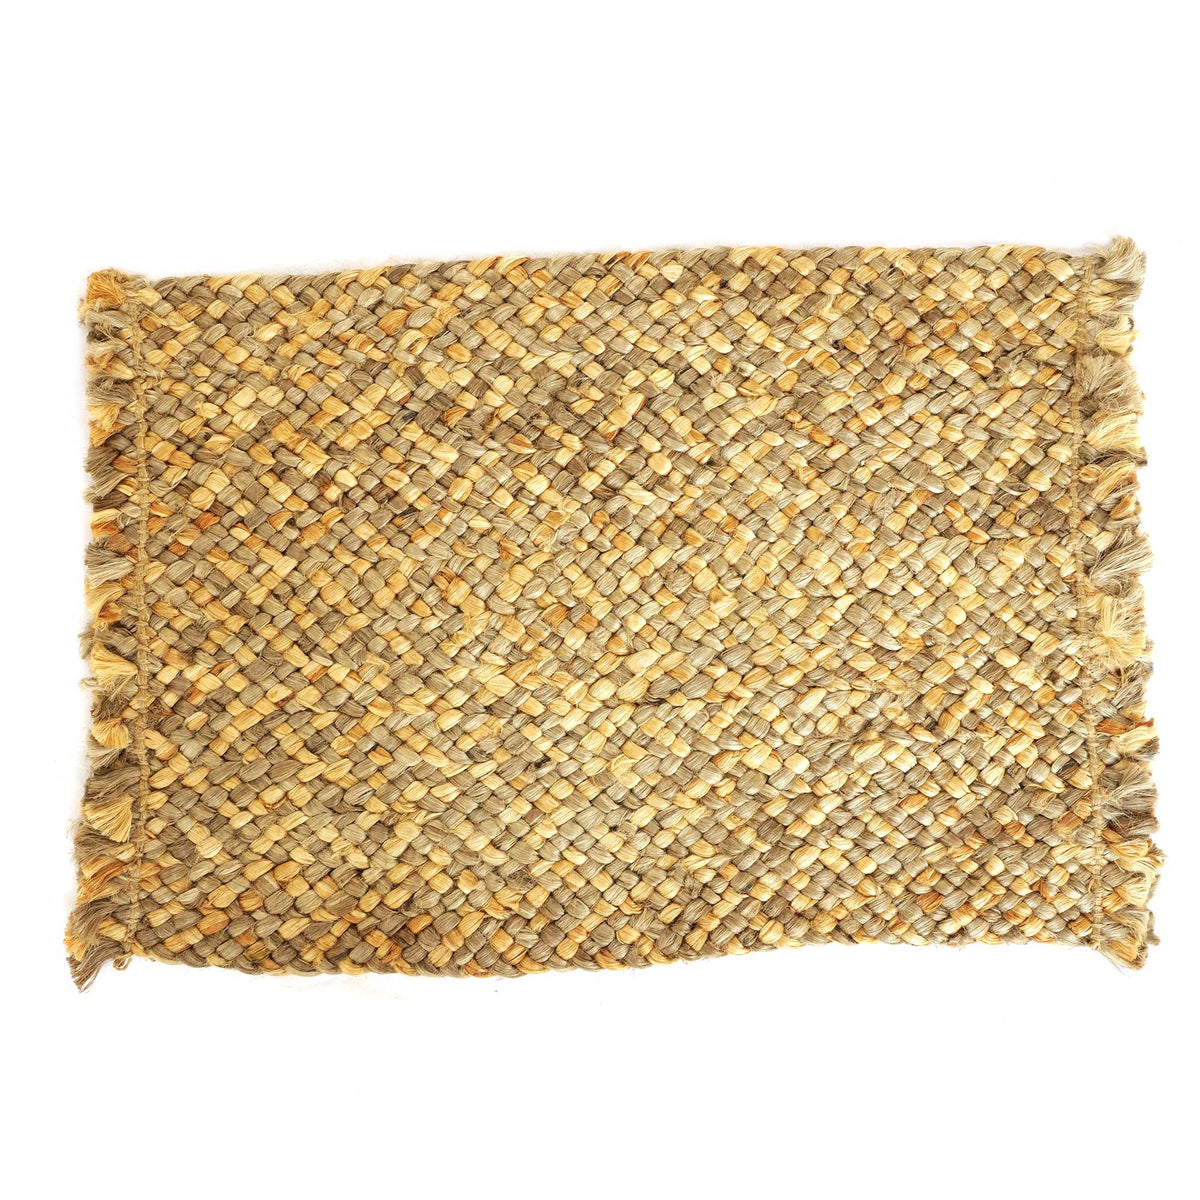 Braided Luxe Mat -  Hand braided Jute Rug - Handmade, Organic, Natural and Sustainable